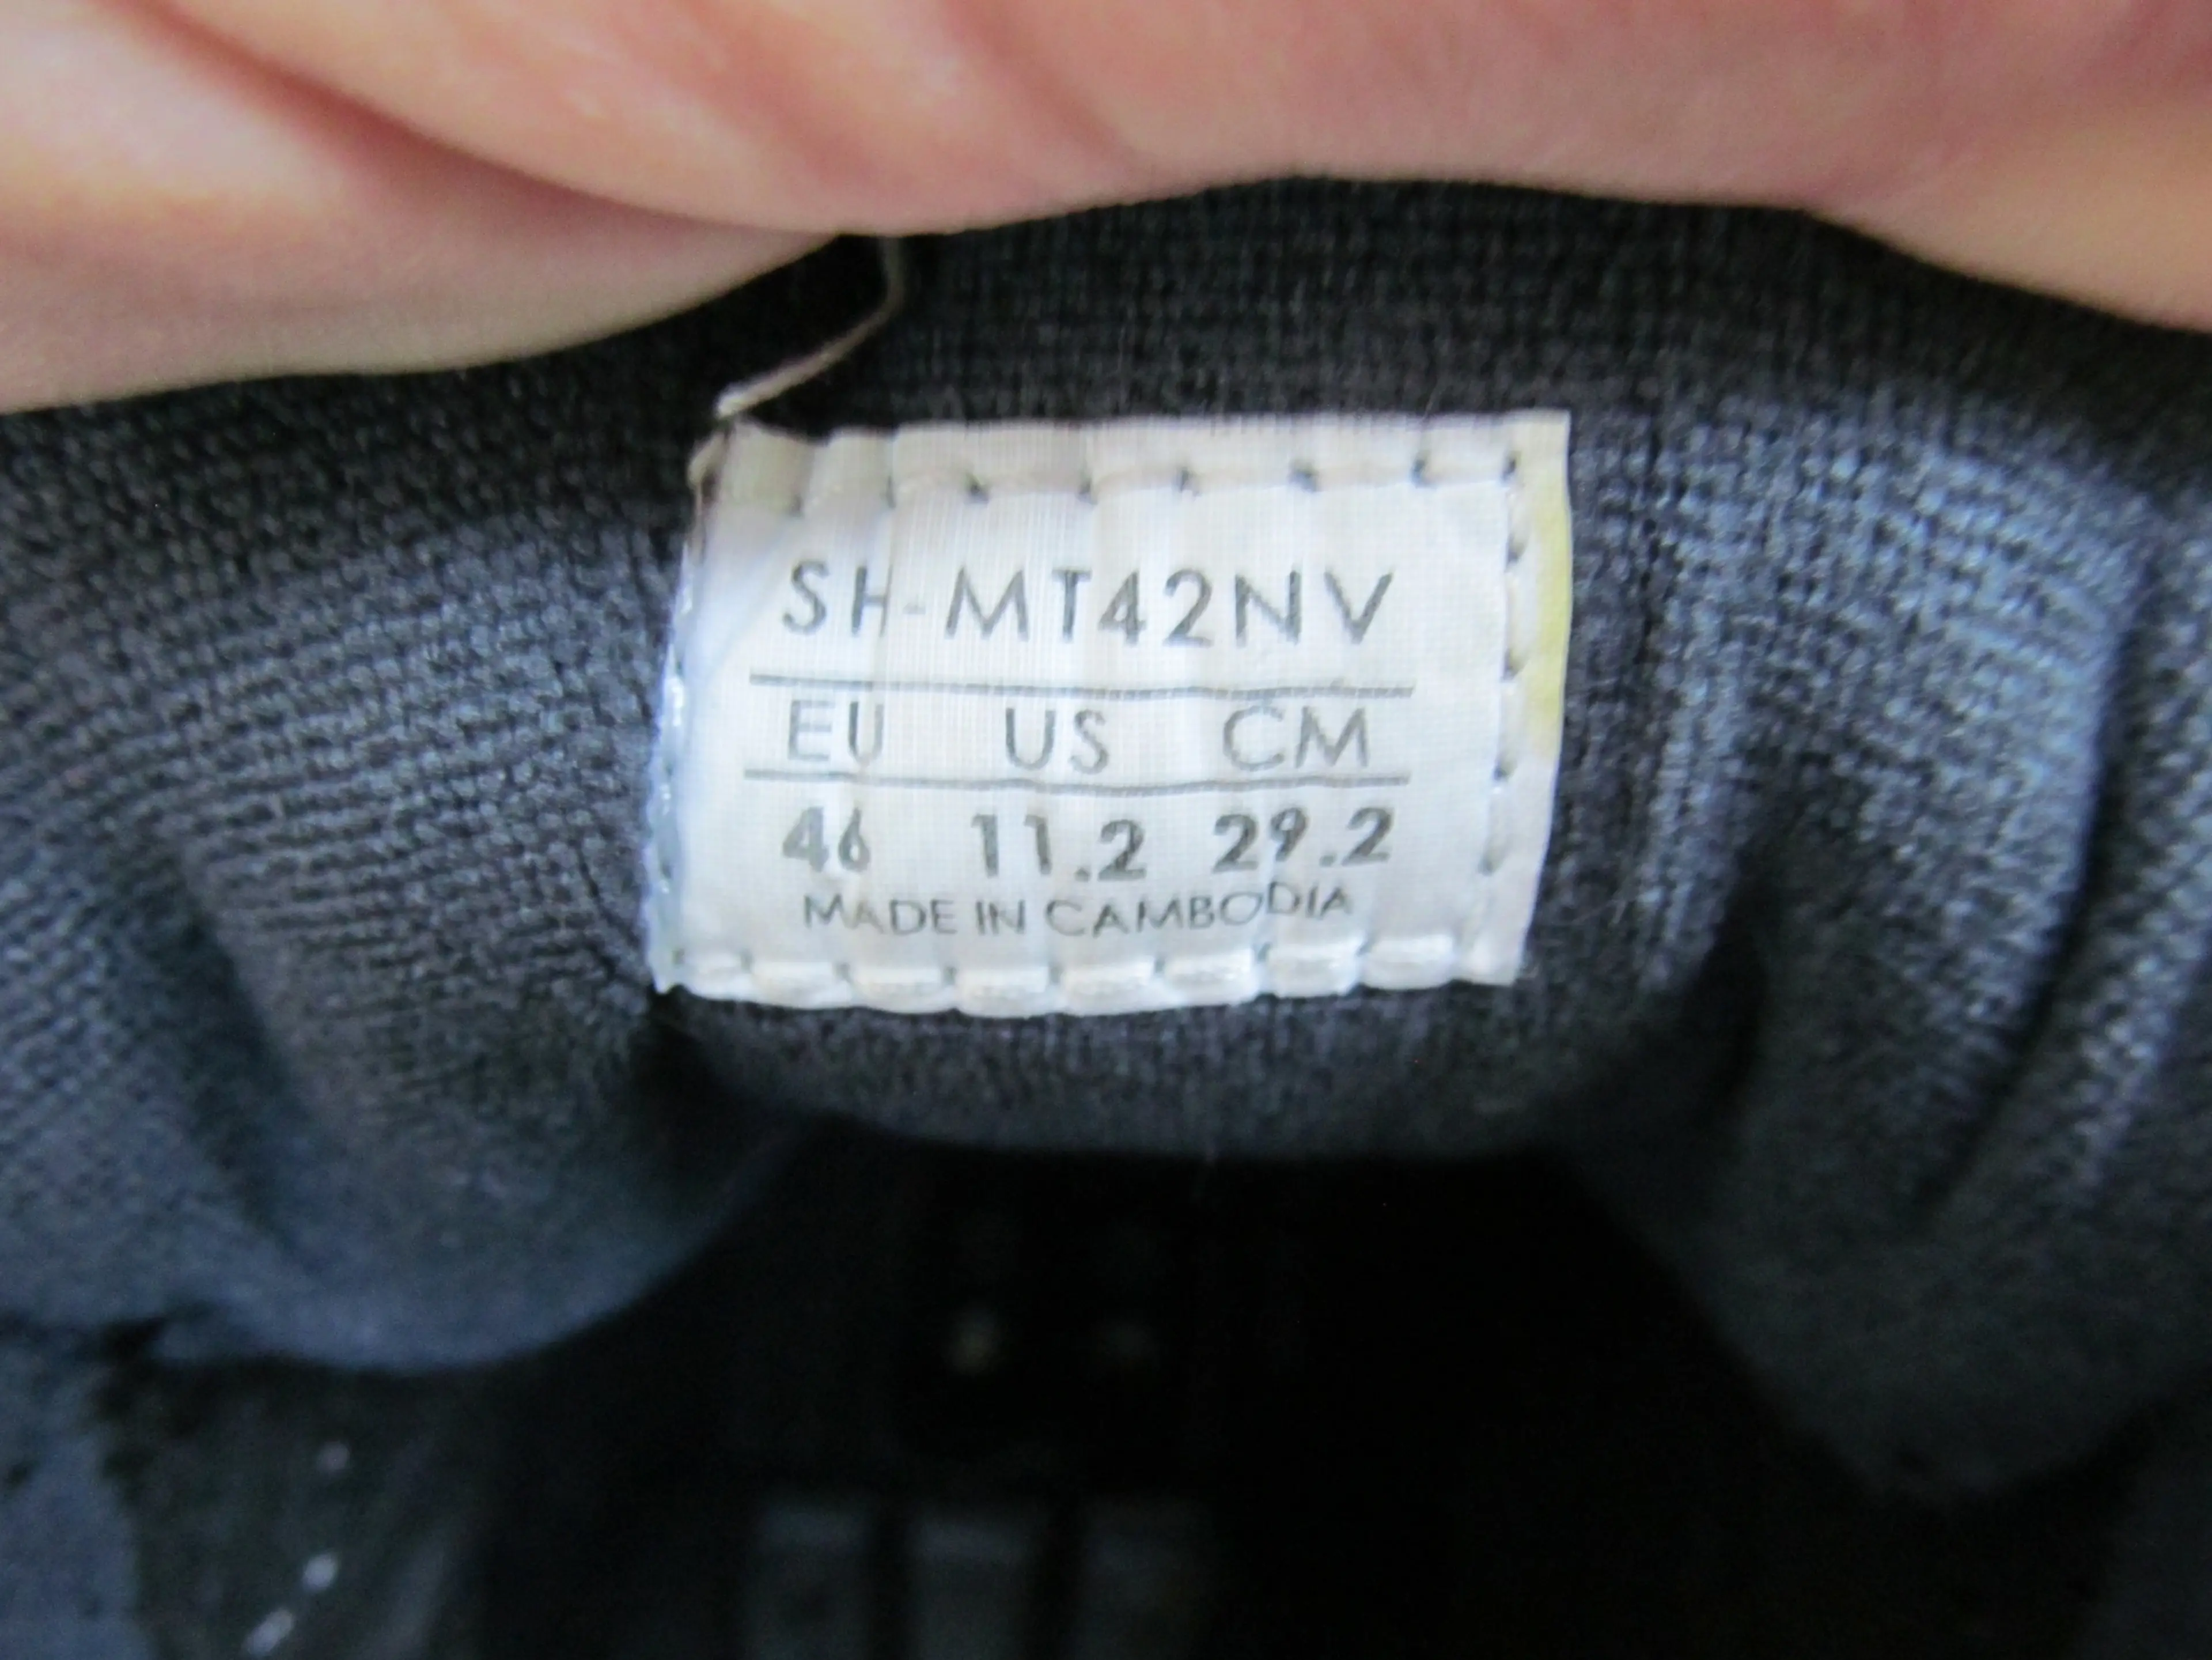 3. Pantofi Shimano SH-MV42NV nr 46, 29.2 cm